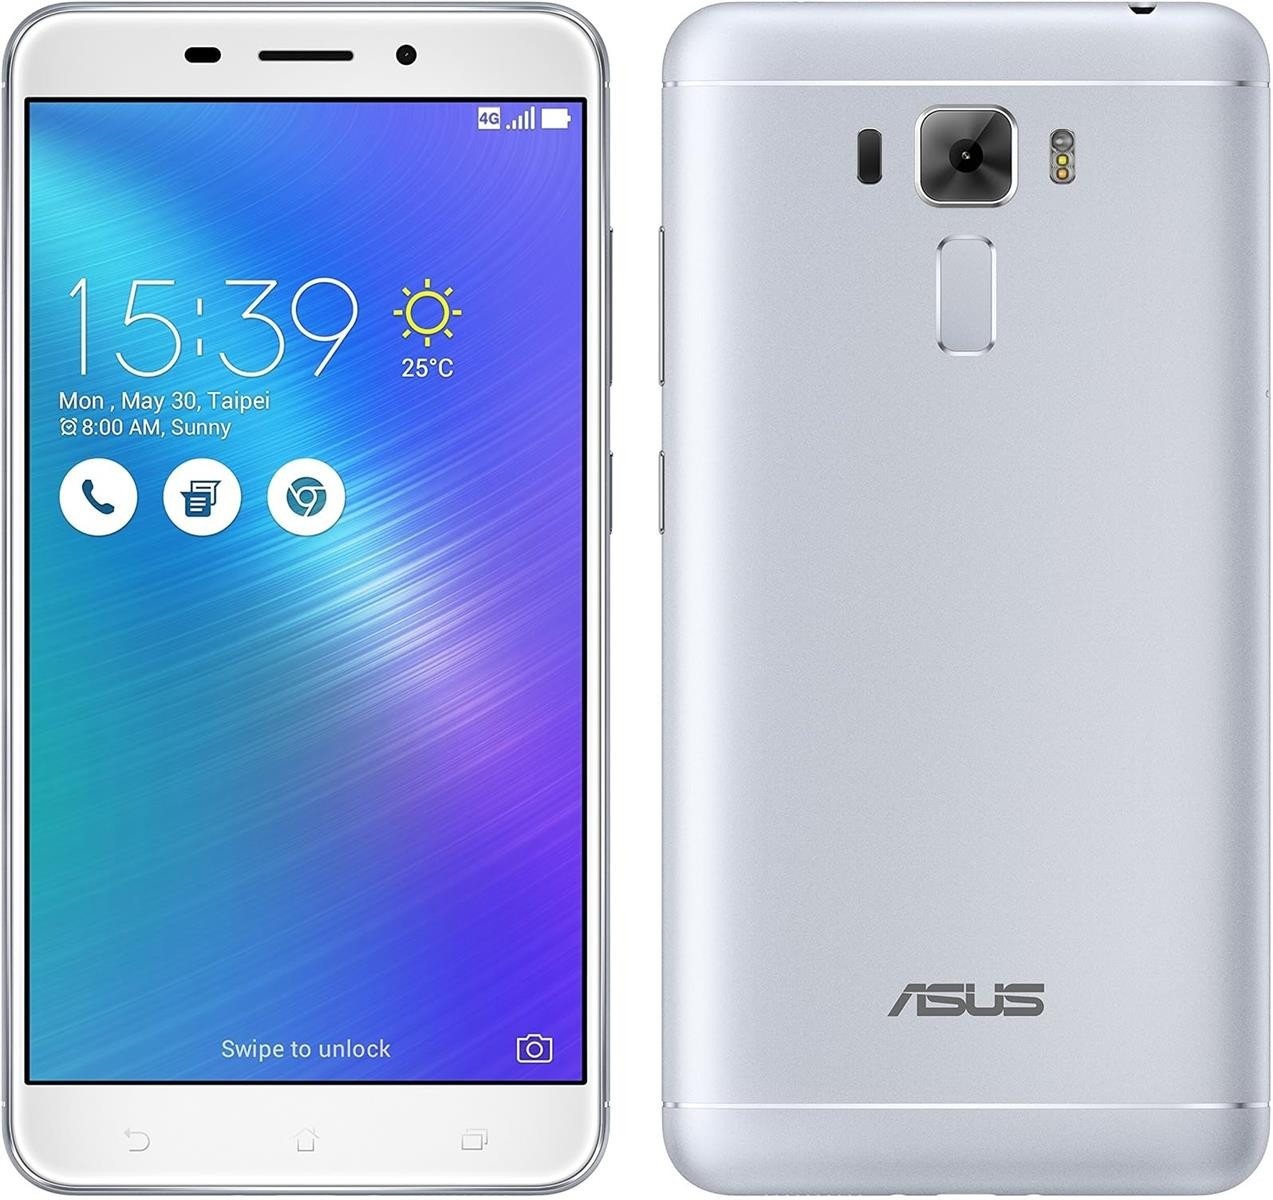 Asus Asus Zenfone 3 Laser ZC551KL Silver 32GB Android Smartphone Neu in OVP Smartphone (13,97 cm/5,5 Zoll, 32 GB Speicherplatz, 13 MP Kamera, Laser AF) silberfarben